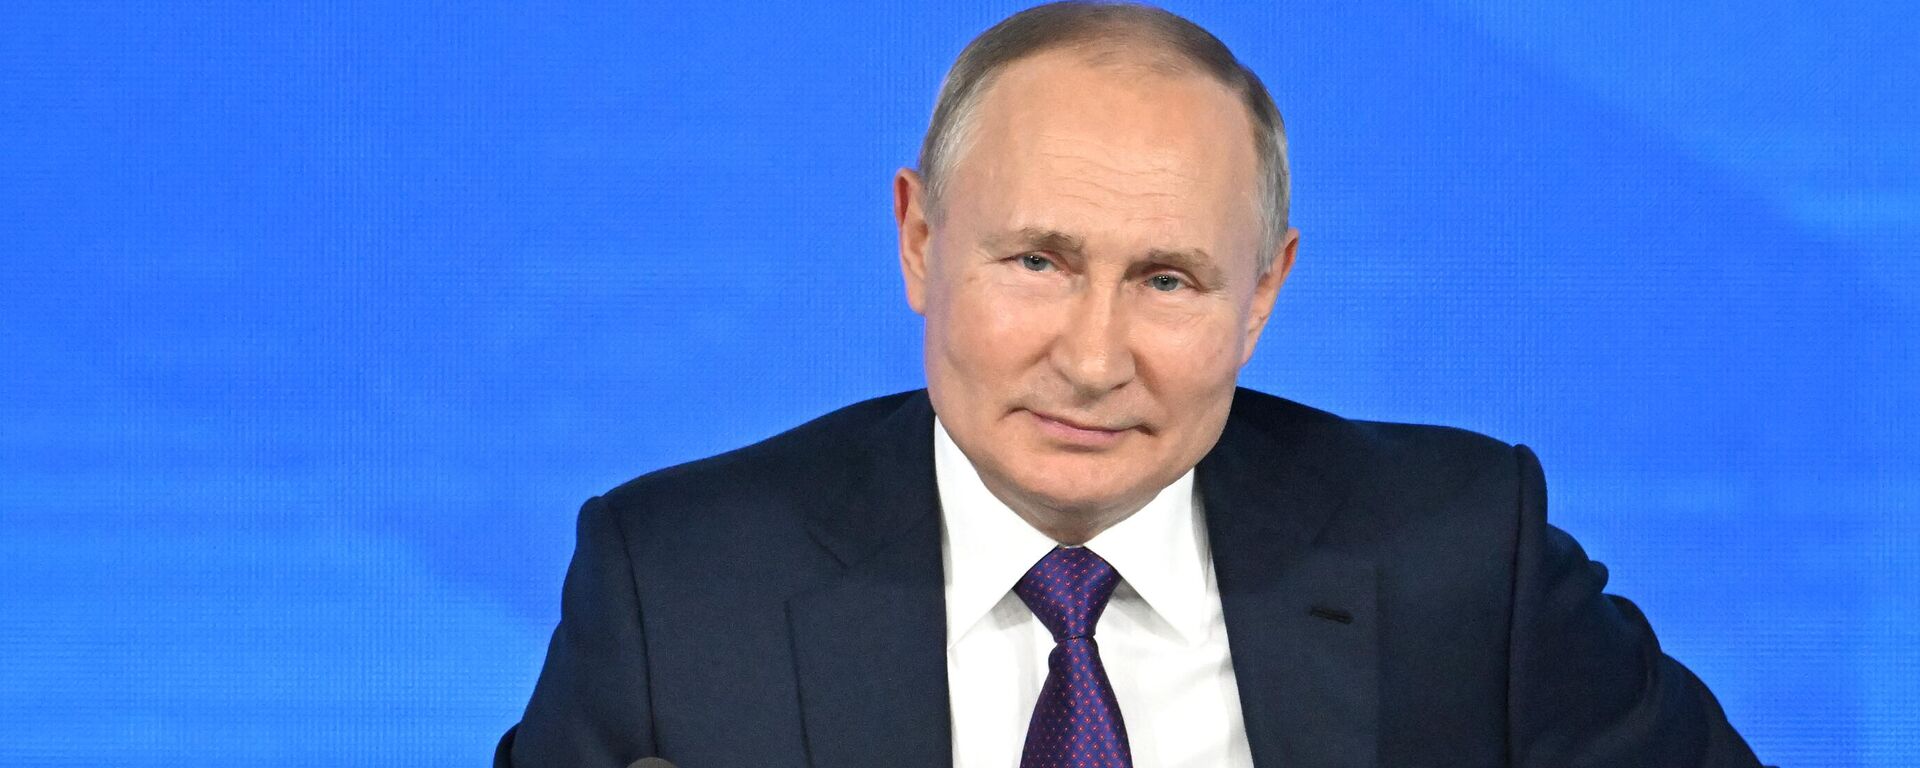 Vladímir Putin, presidente de Rusia, durante la gran conferencia de prensa anual en Moscú (Rusia), el 23 de diciembre del 2021 - Sputnik Mundo, 1920, 21.01.2022